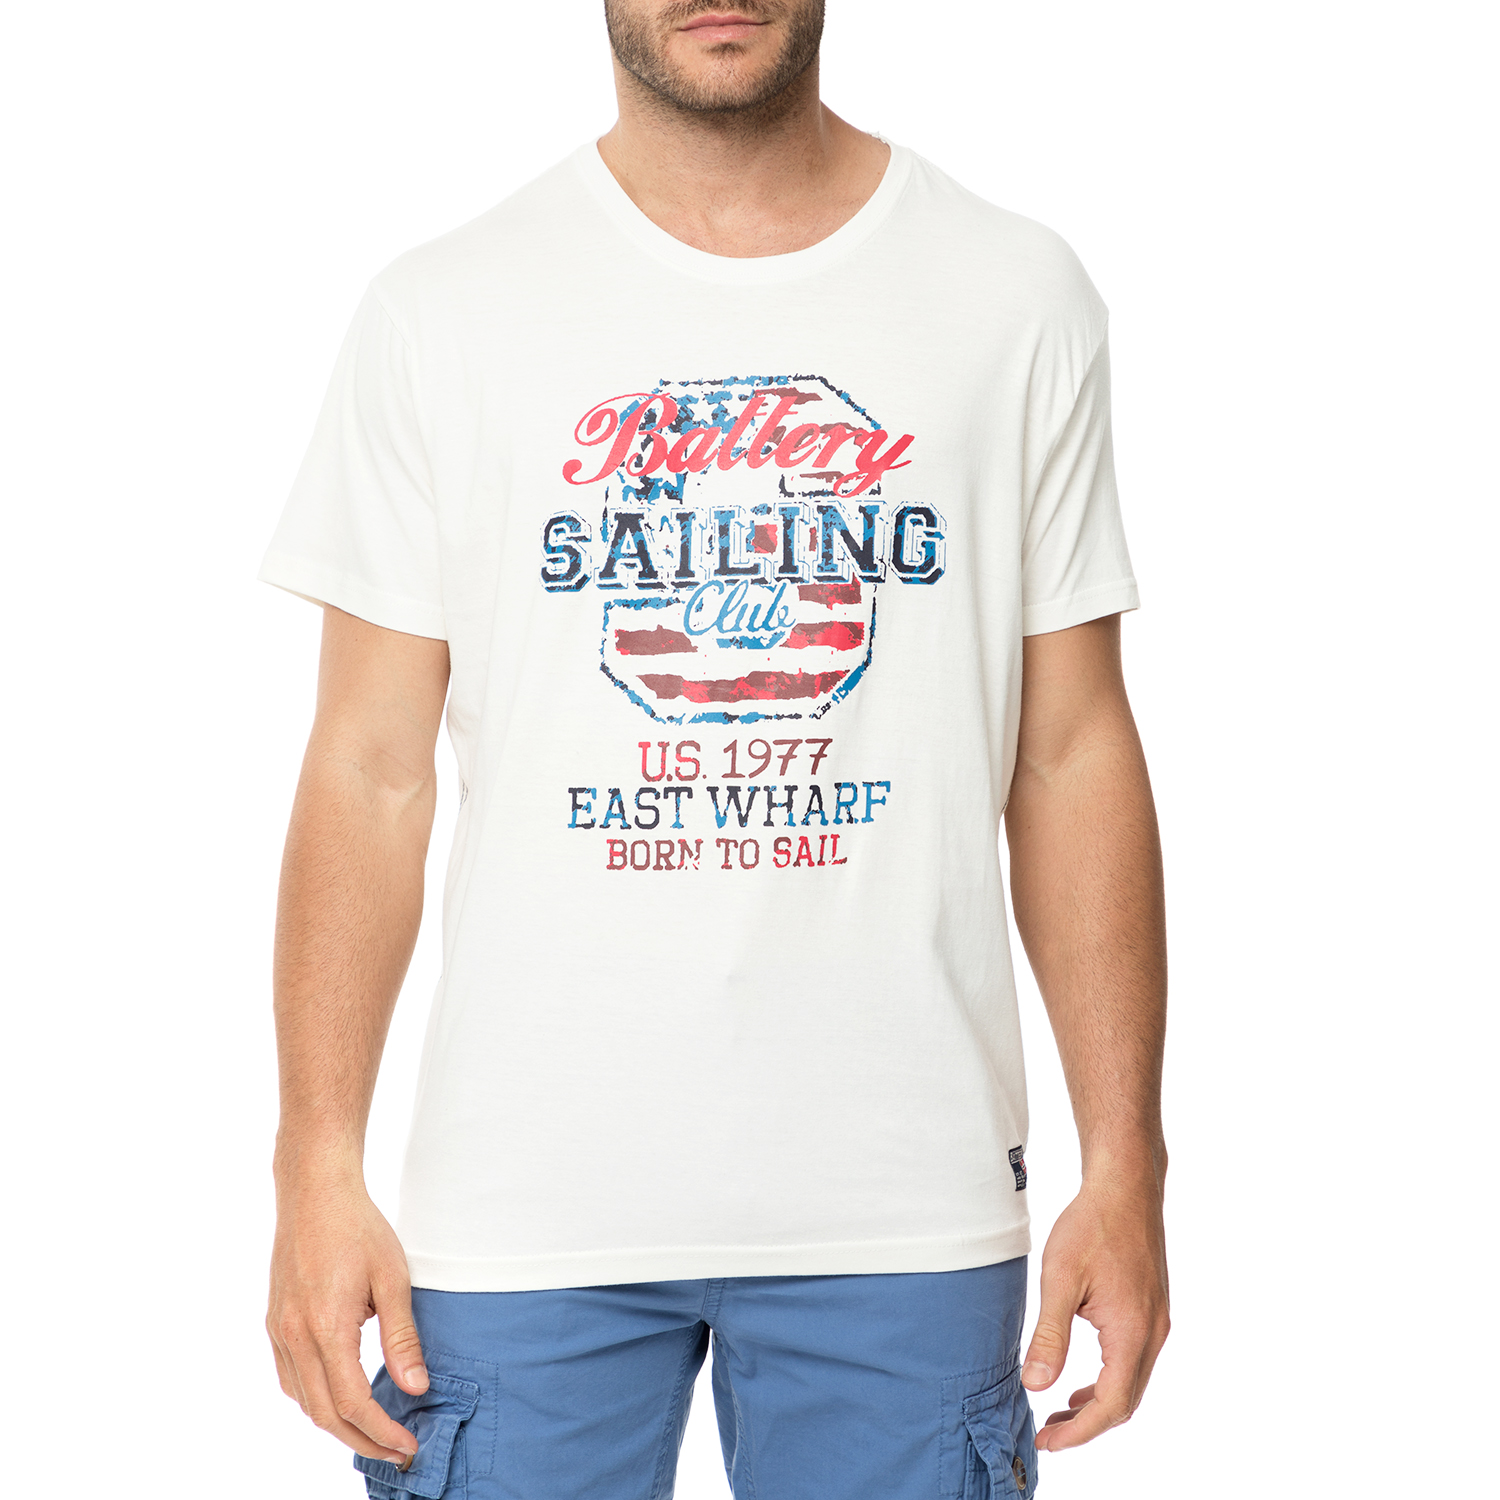 Ανδρικά/Ρούχα/Μπλούζες/Κοντομάνικες BATTERY - Ανδρικό t-shirt BATTERY λευκό με στάμπα